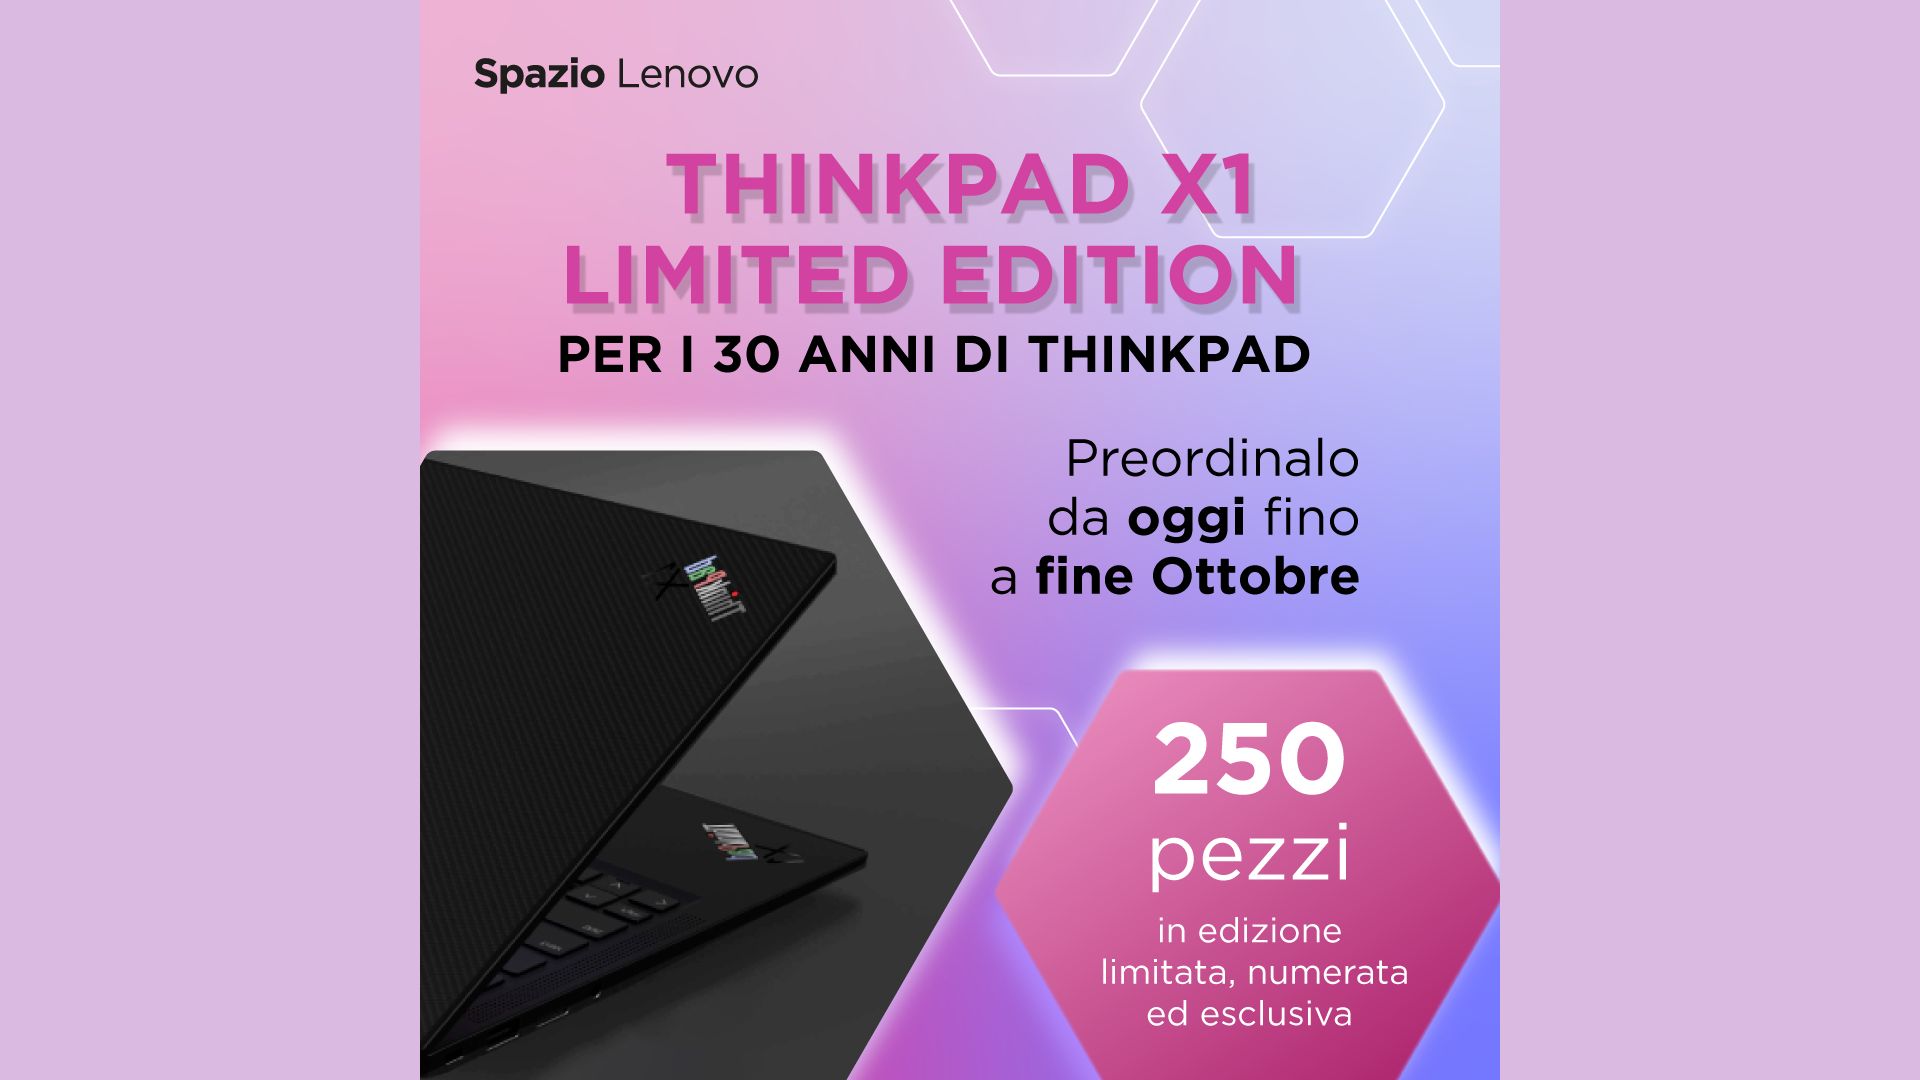 ThinkPad X1 Limited Edition